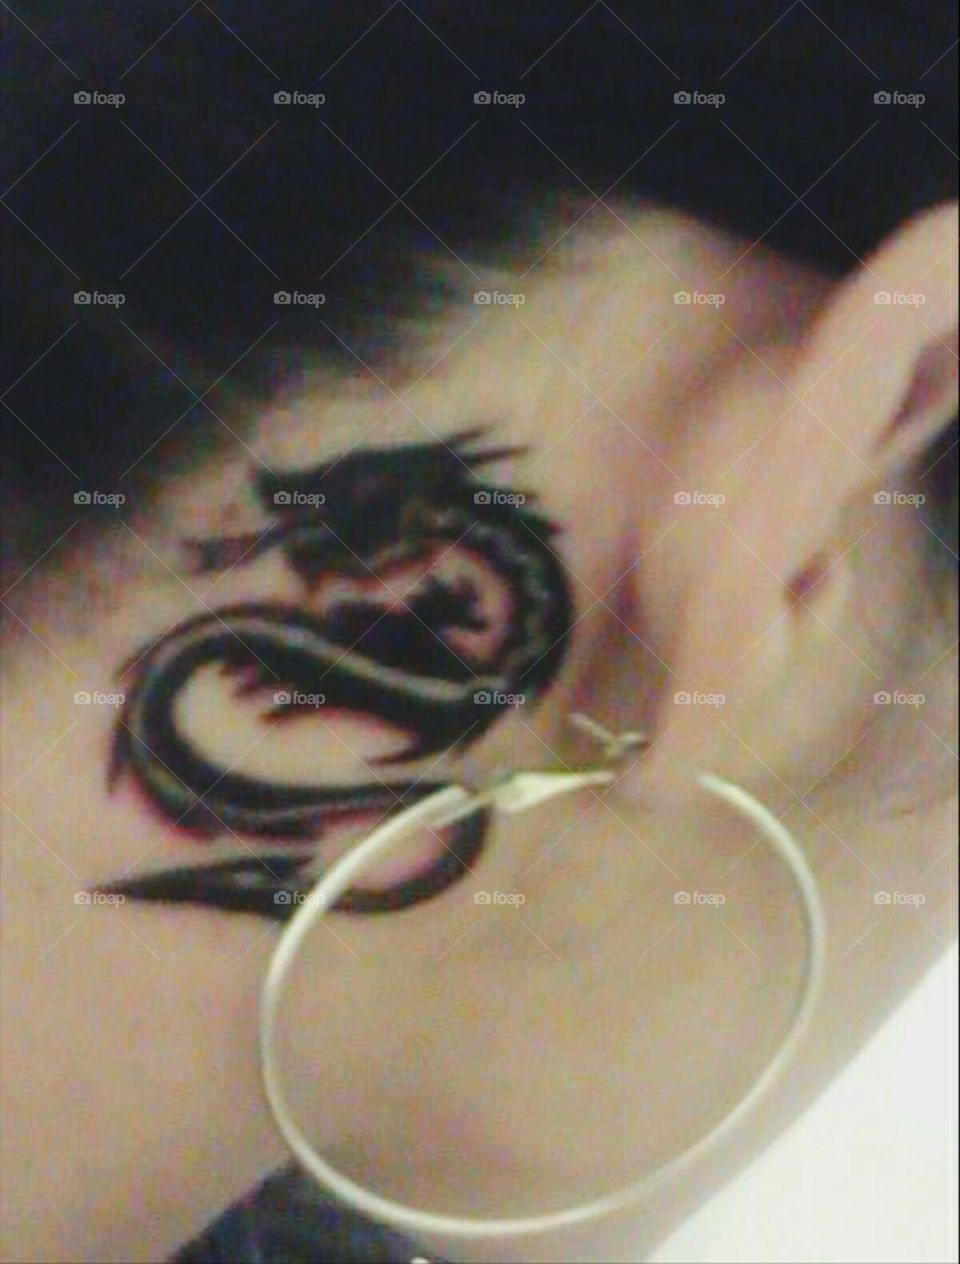 My Dragon Tattoo